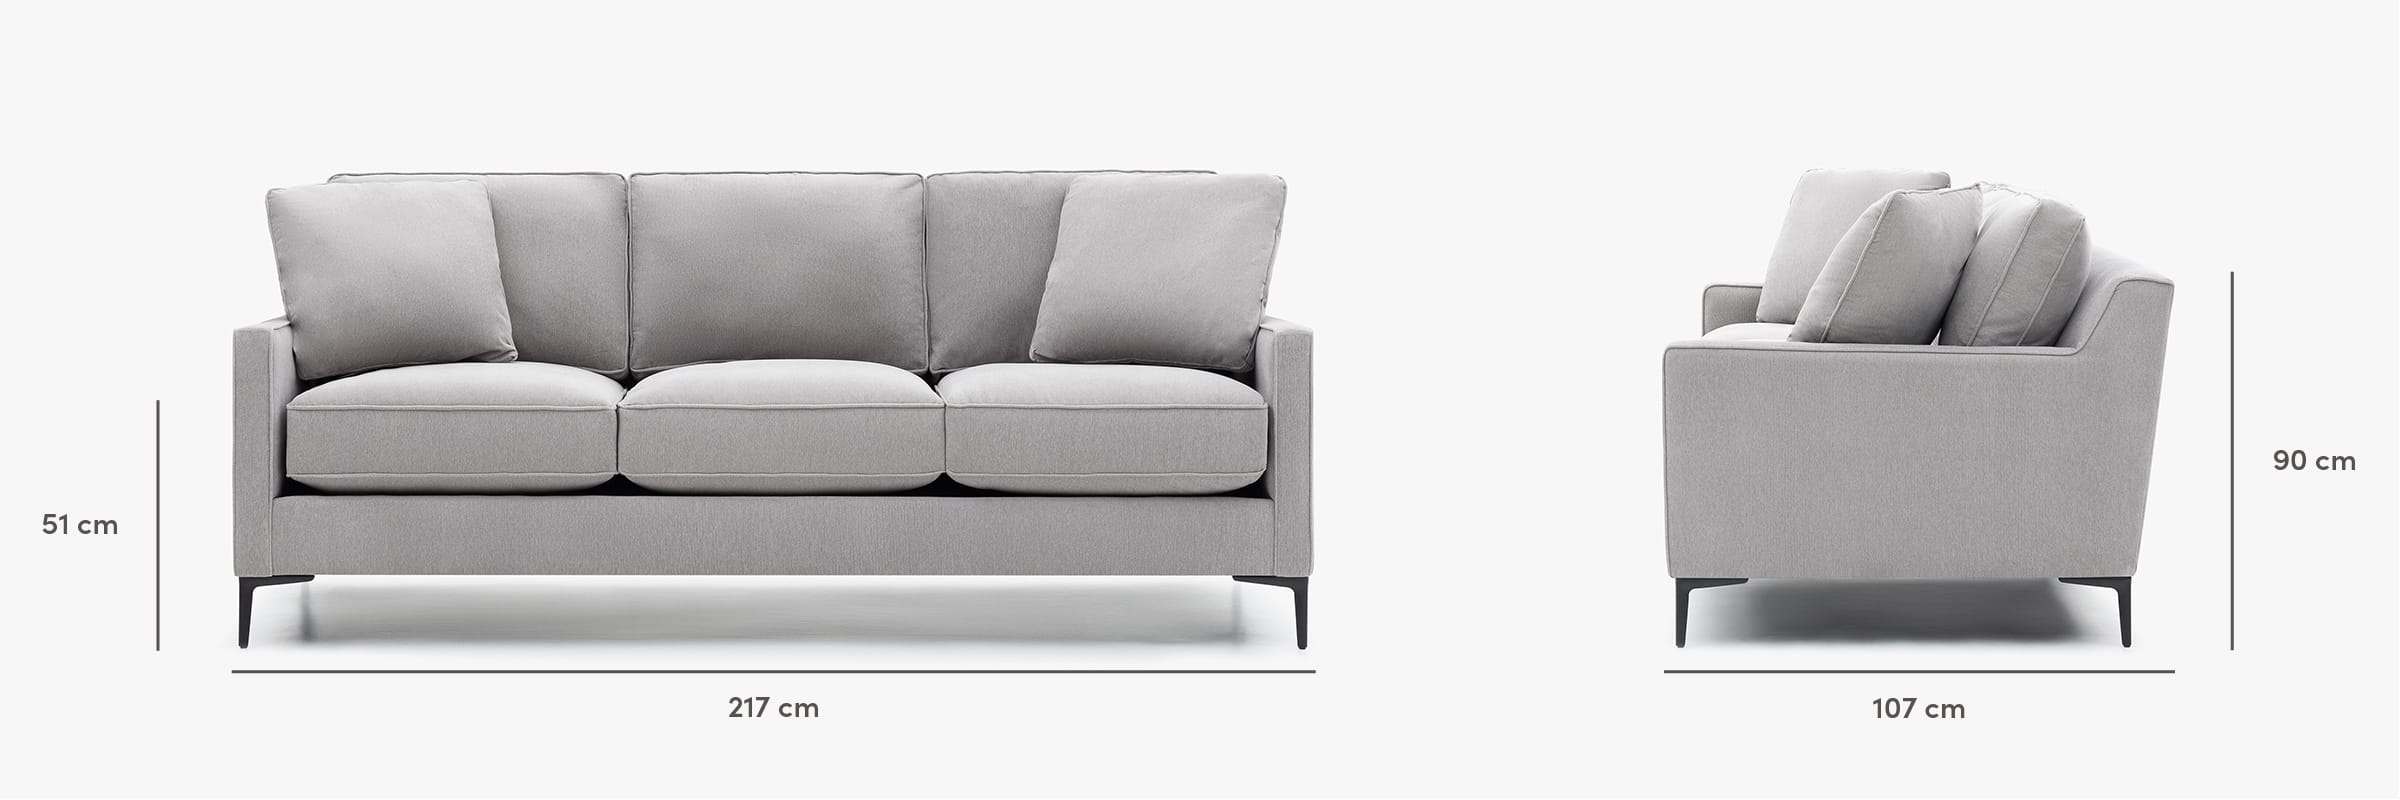 Kennedy sofa dimensions